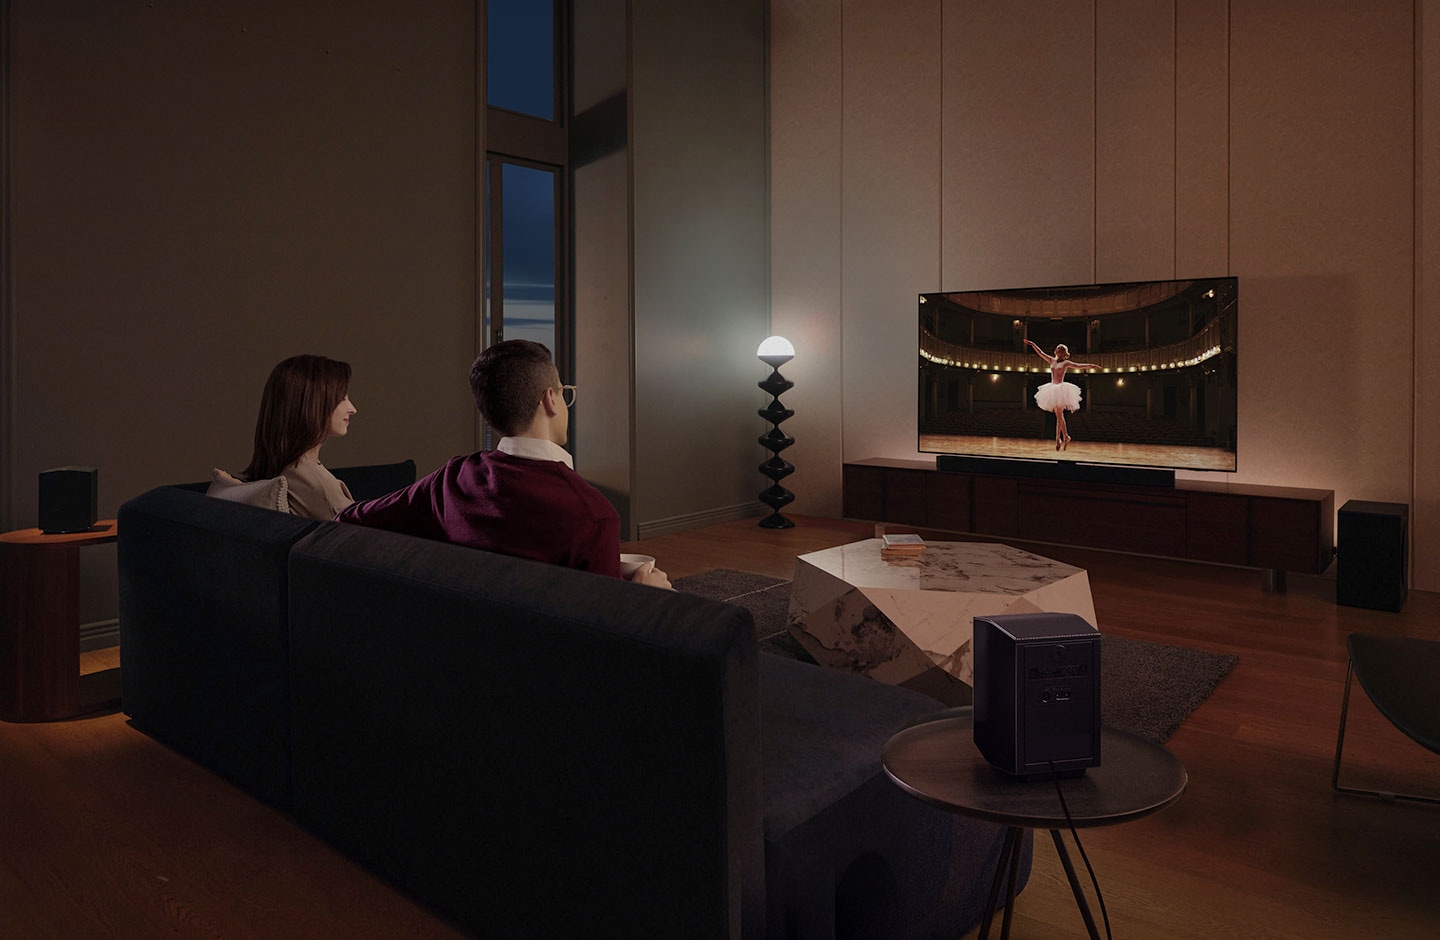 Bir çift evlerinin salonunda, Samsung Soundbar’ın sinema benzeri bir deneyim sunan çevresel ses özelliğiyle bir film izlerken görülüyor.